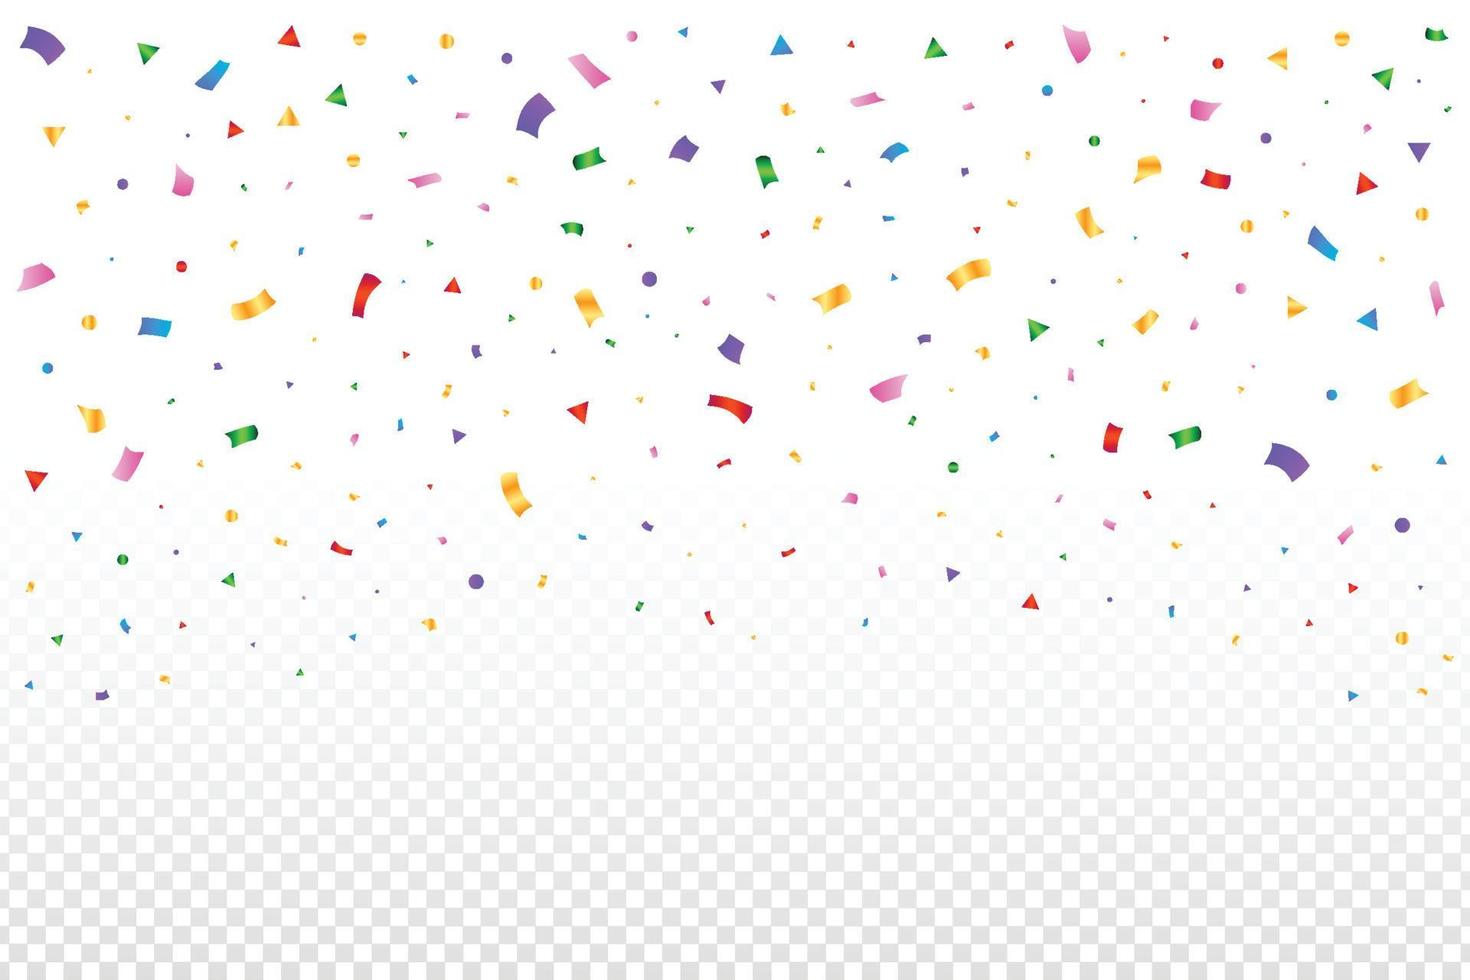 kleurrijke confetti vallen geïsoleerd op transparante achtergrond. kleurrijke klatergoud vallen. evenement en verjaardagsfeestje. festival elementen vector. eenvoudige veelkleurige confetti vallende illustratie. vector